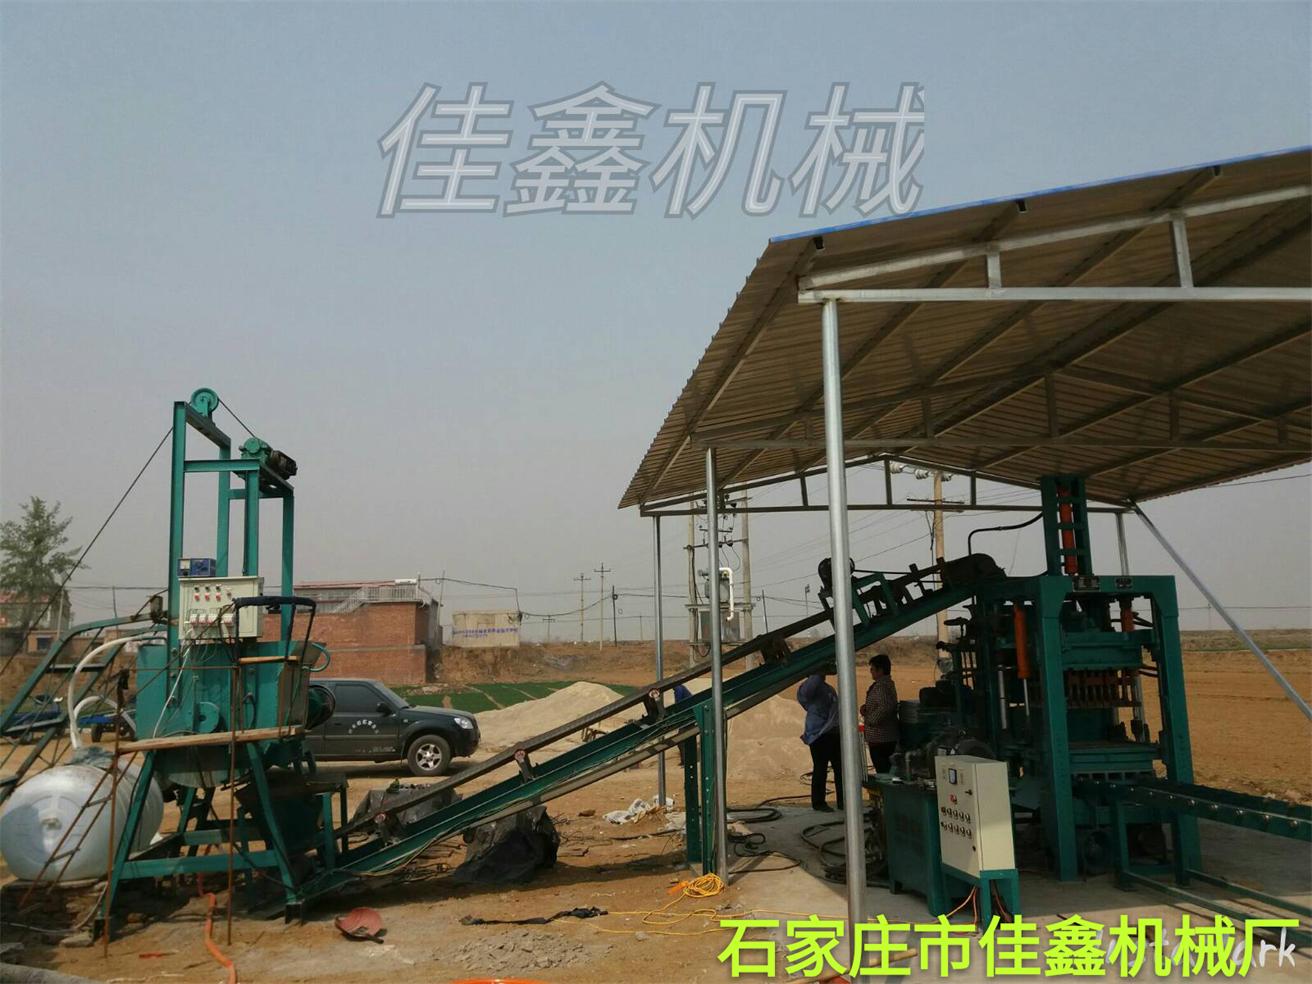 石家庄佳鑫厂家直销半自动水泥垫块成型机、路面砖设备